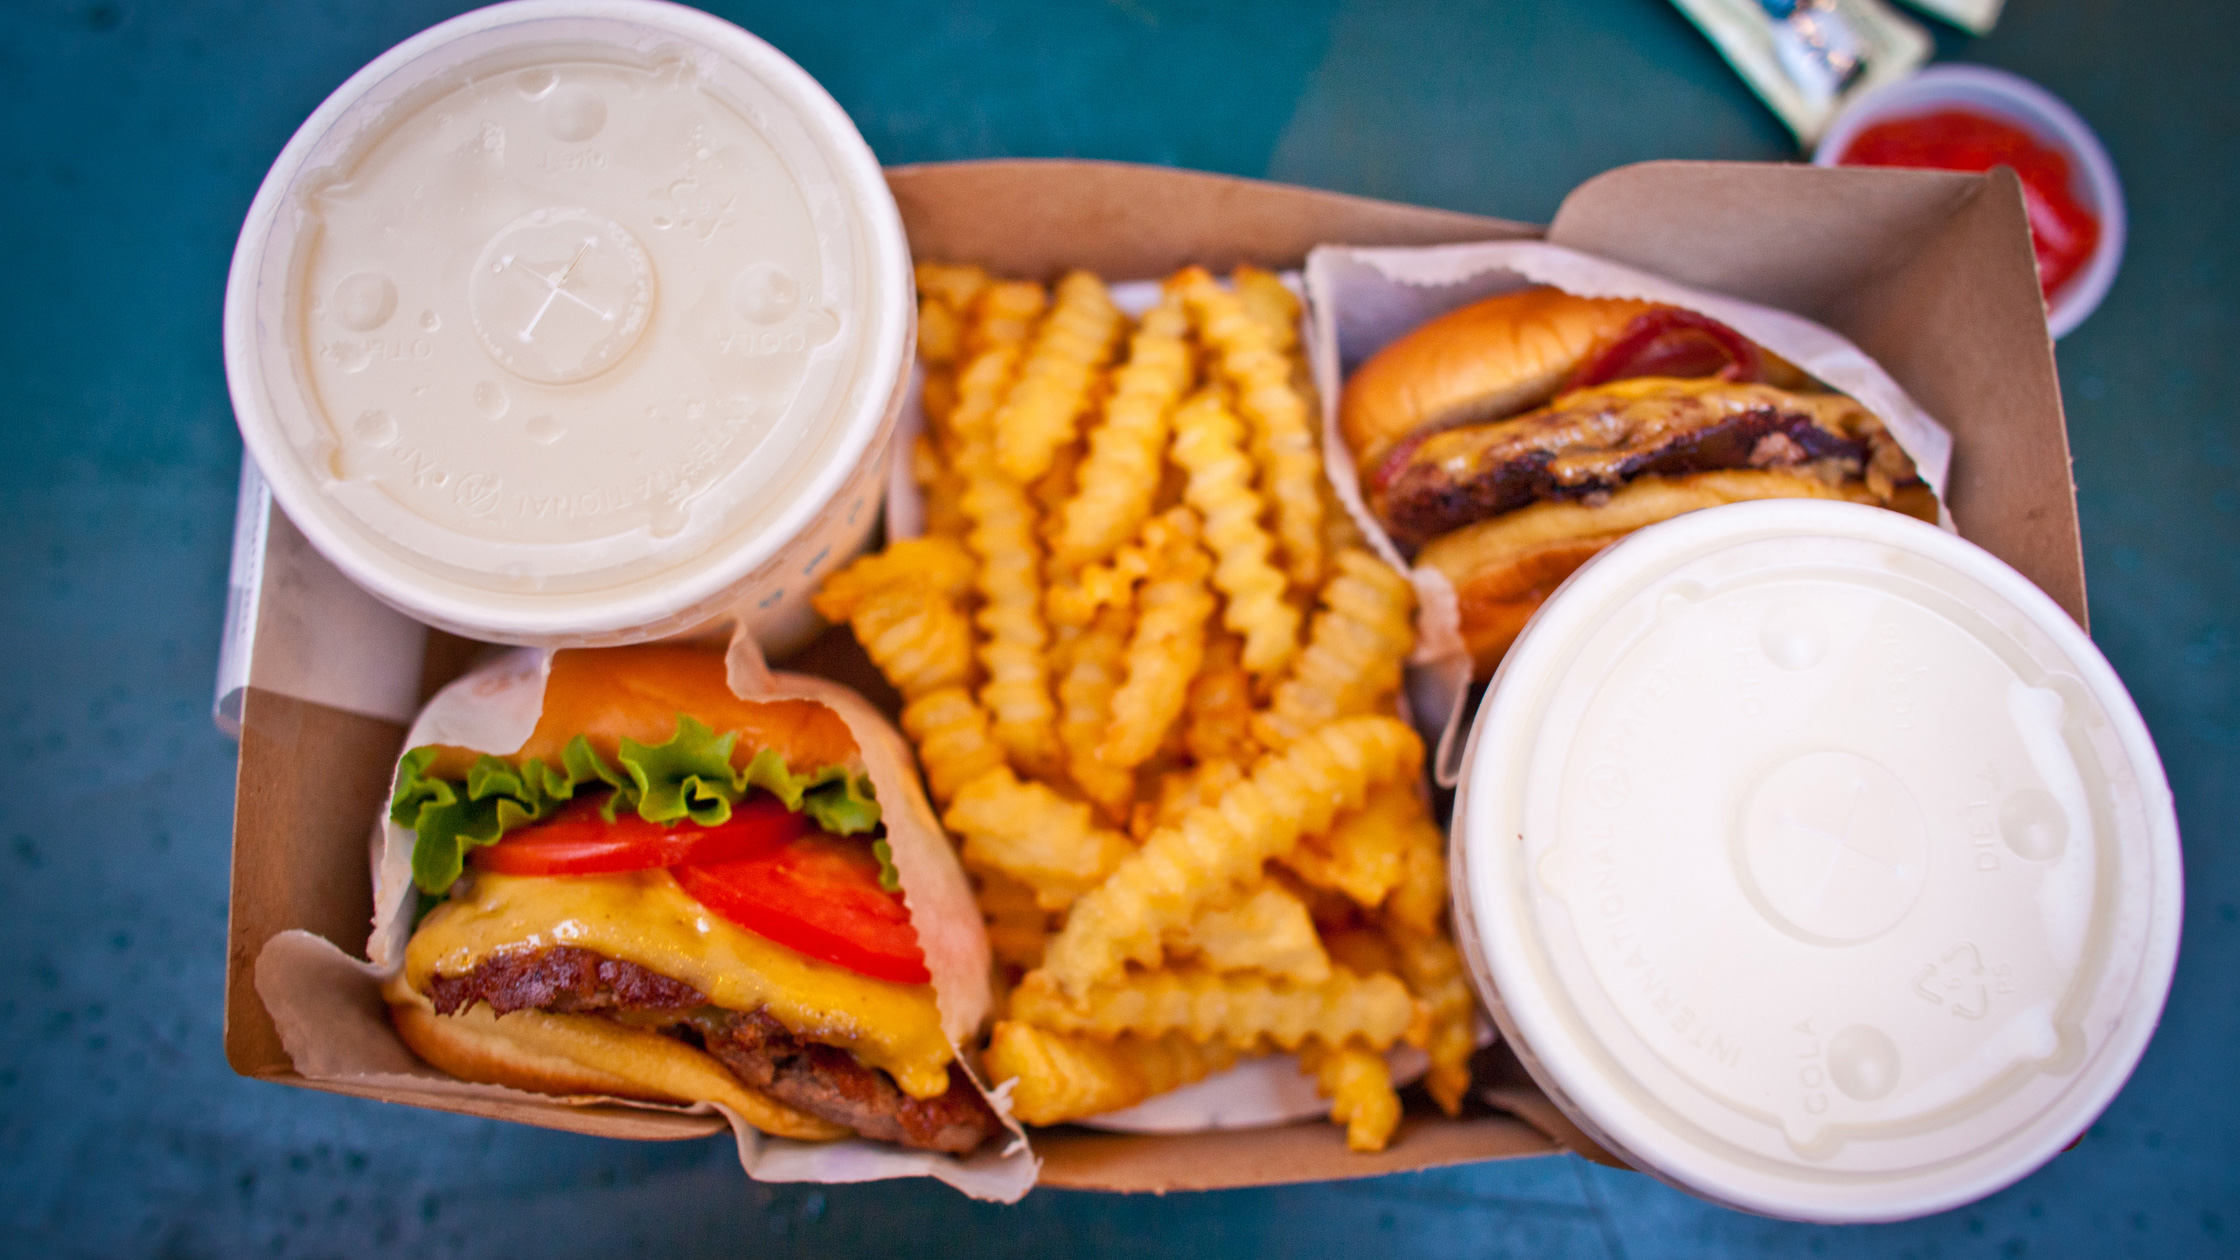 Shake shack burger and fries and soda 